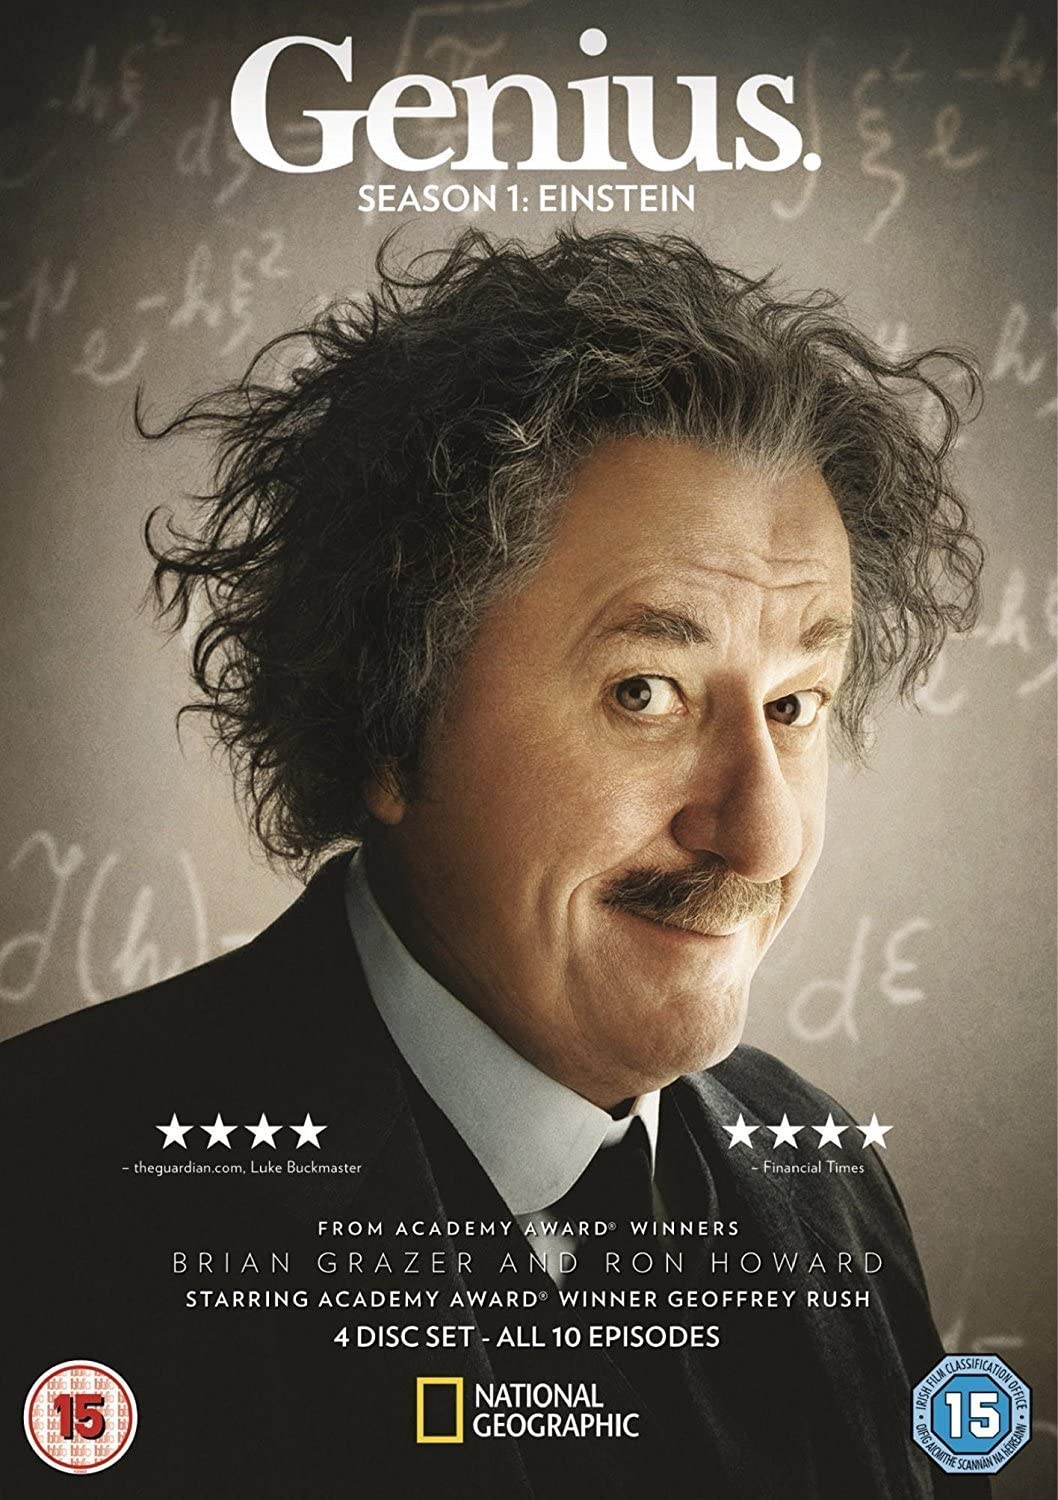 Genius: Season 1 - Einstein [DVD]